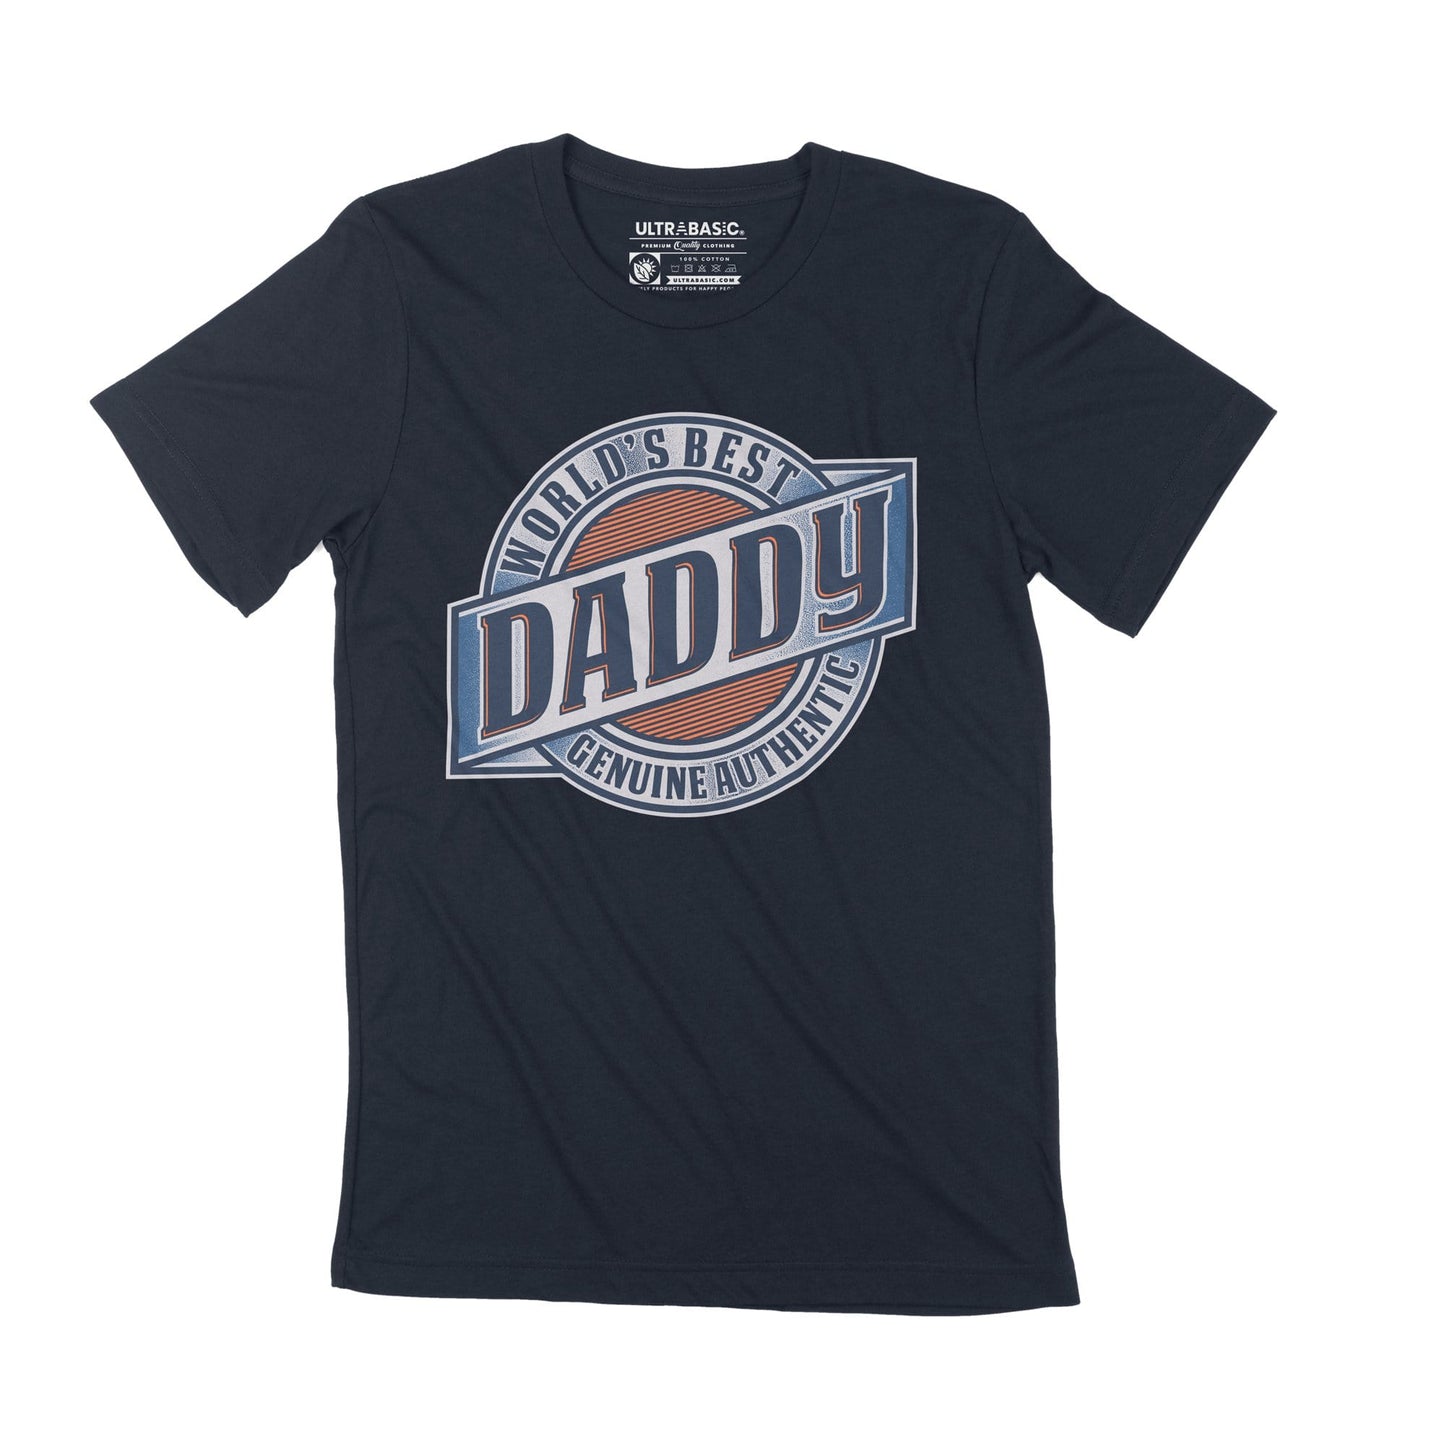 T-Shirt ULTRABASIC pour hommes, meilleur papa du monde, fête des pères, Vintage, décontracté, fabuleux, cadeau